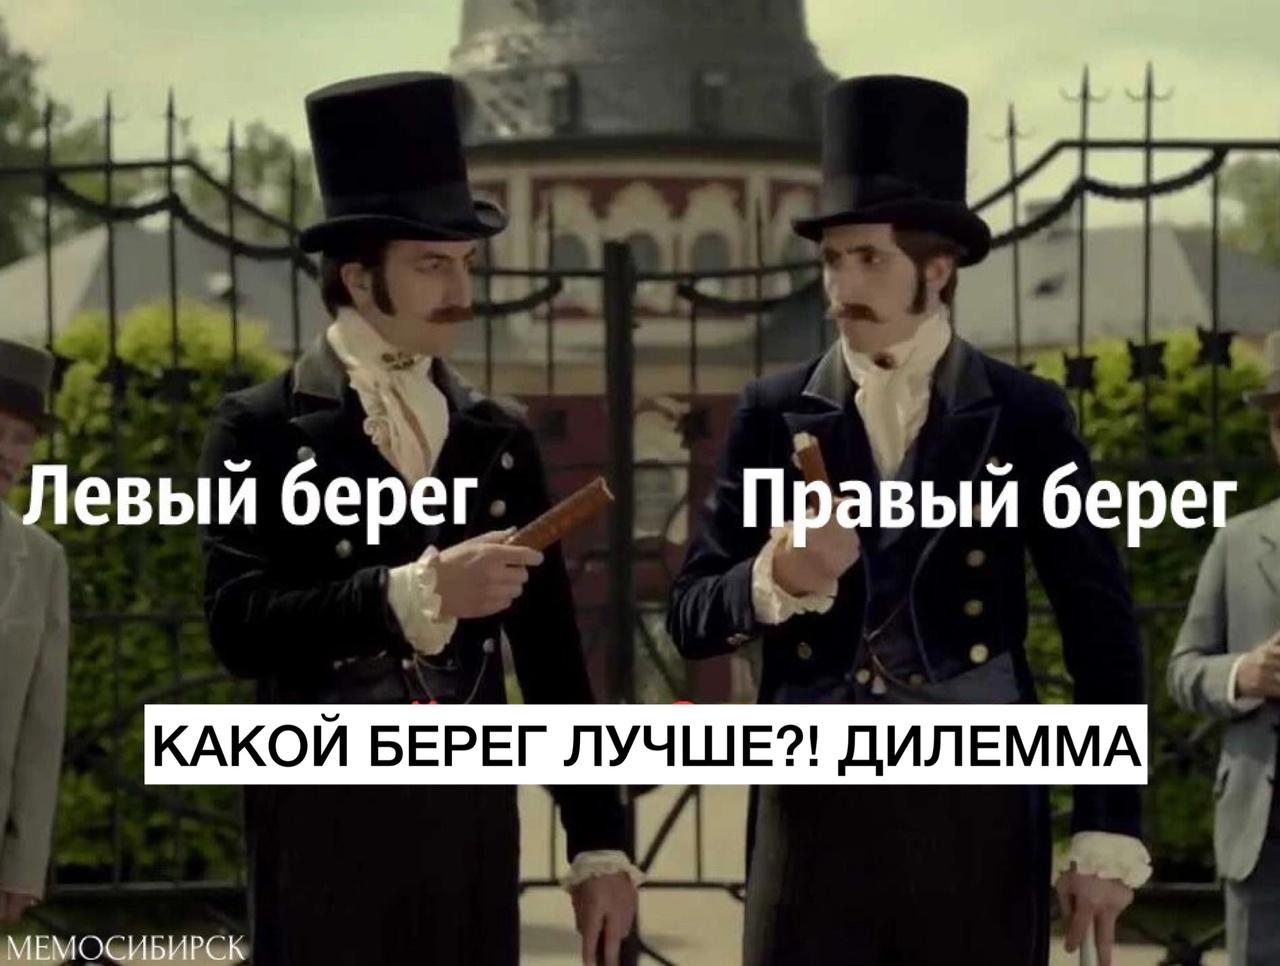 Фото 7 главных мемов про Новосибирск, над которыми смеётся город 6